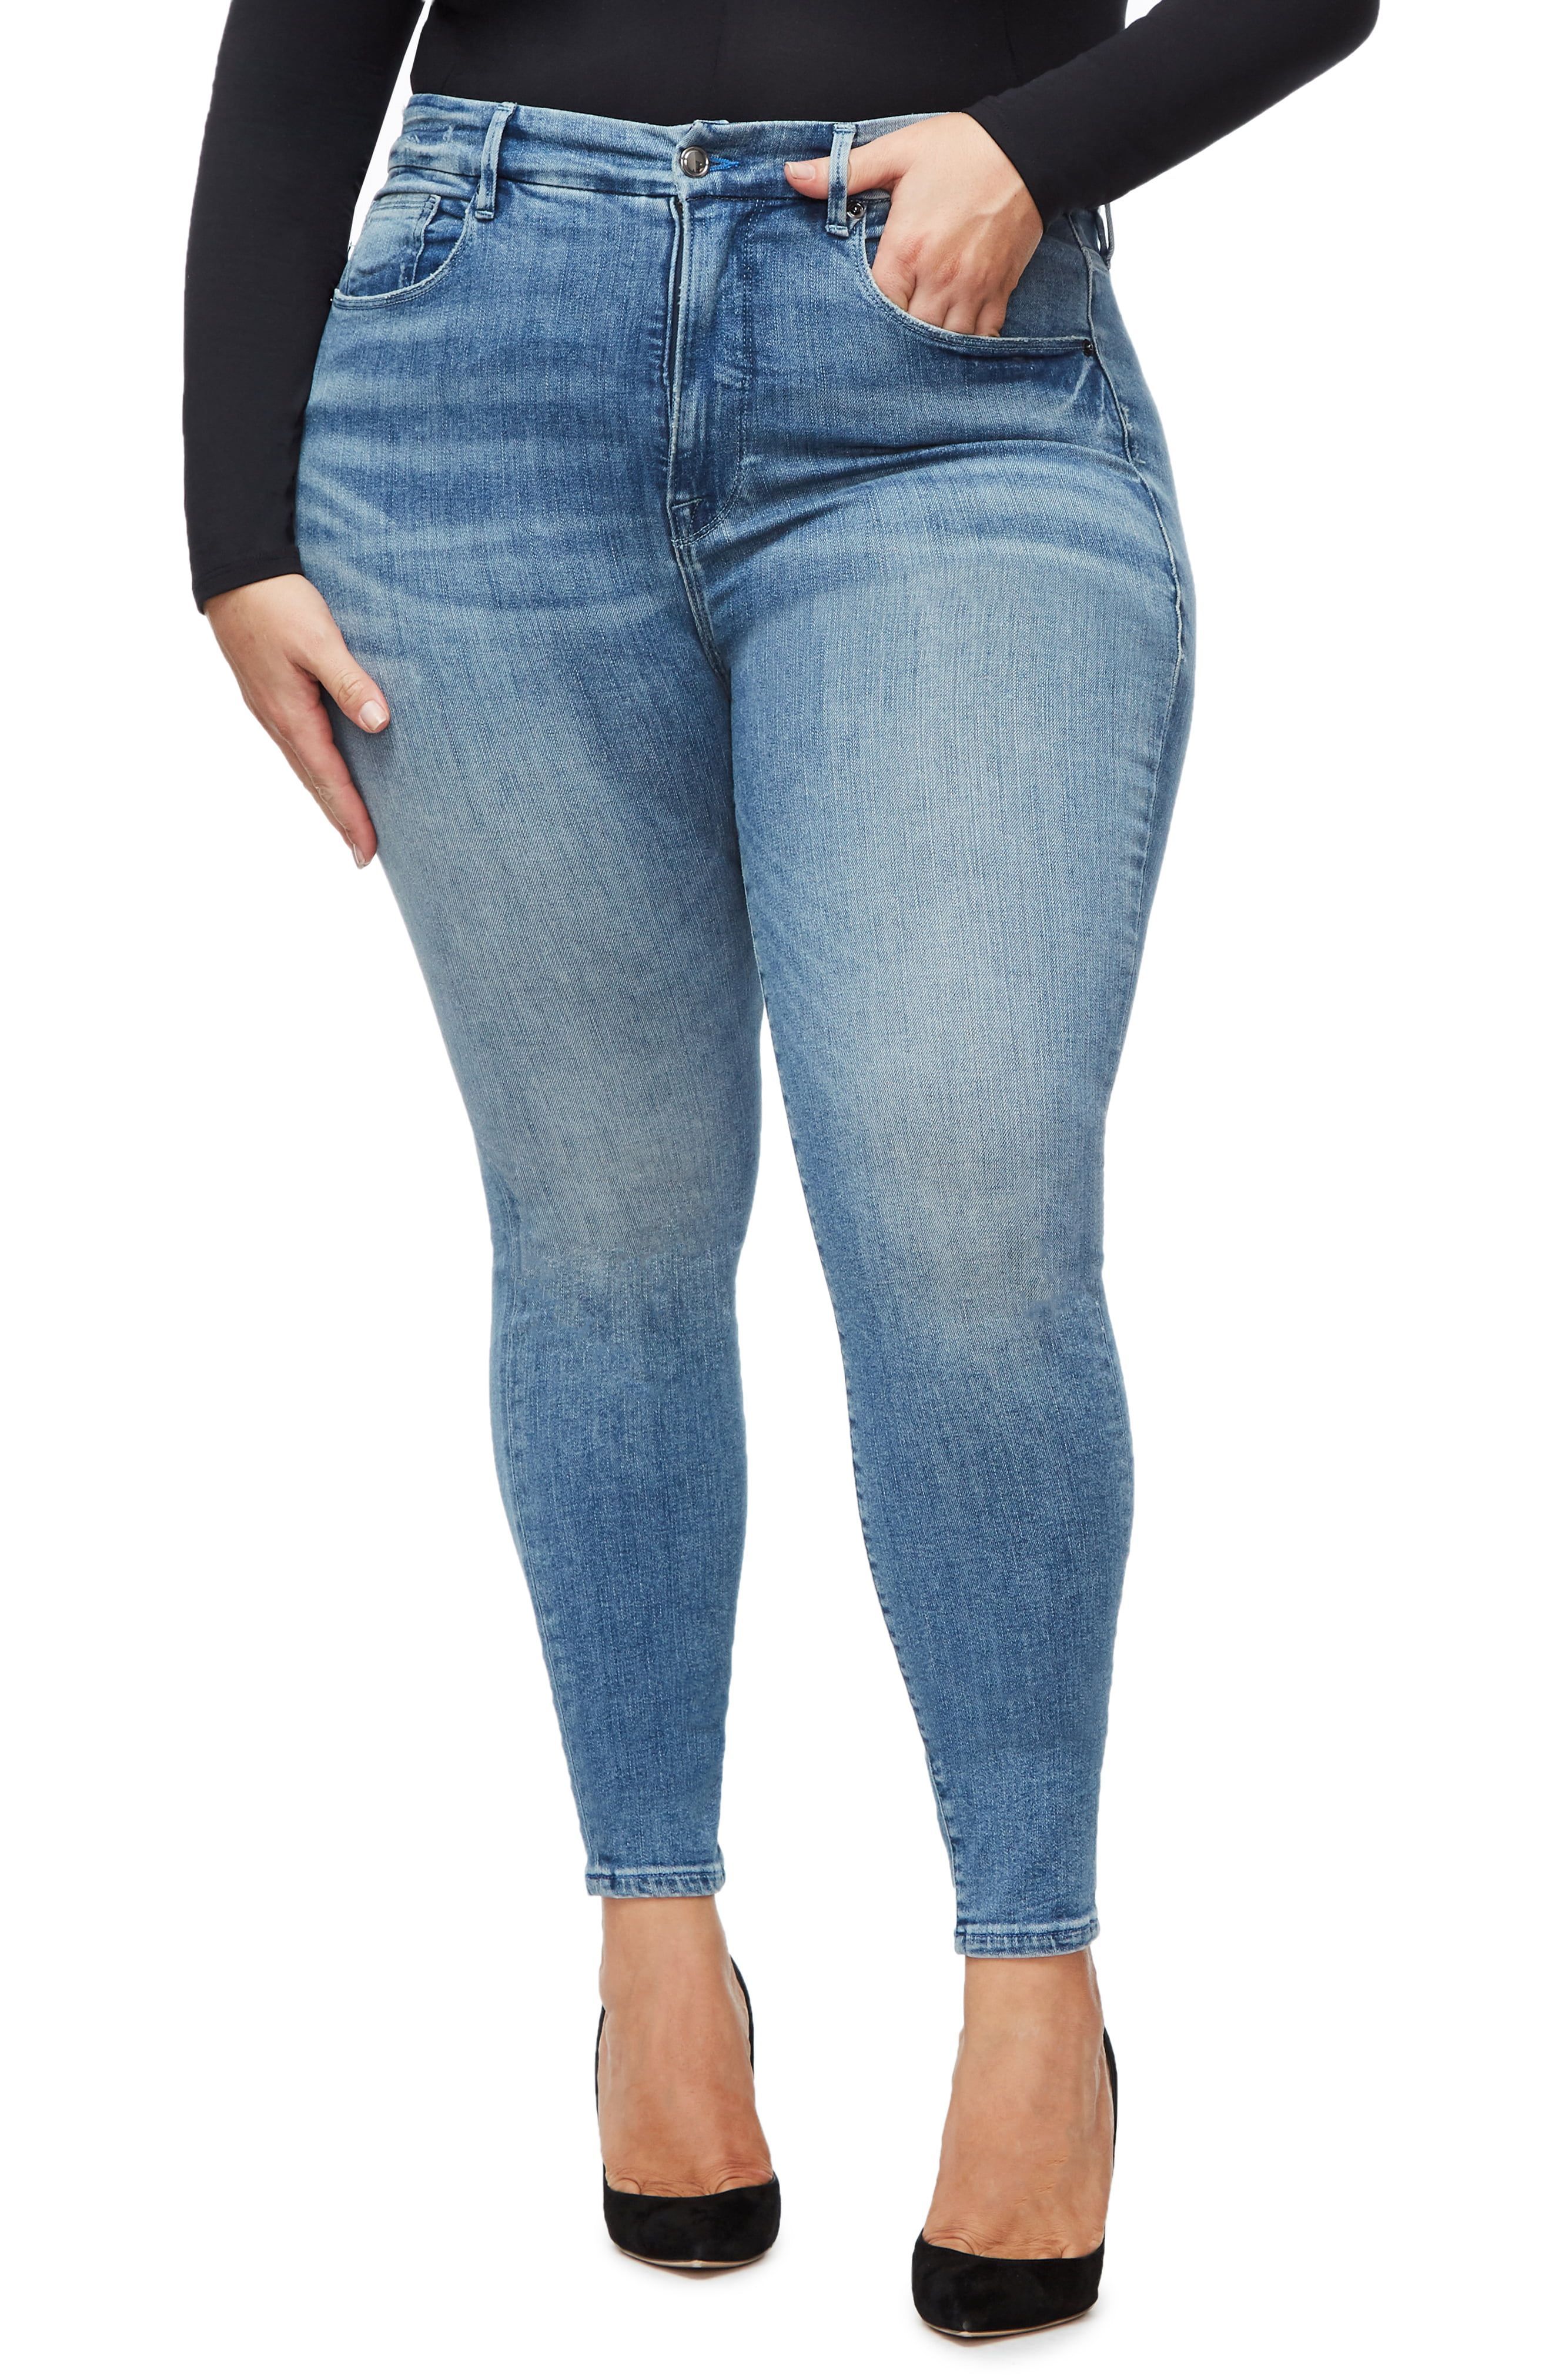 Fashion Plus Size Woman Denim Trousers Waist Jeans Pencil Slim Higt Waist FW